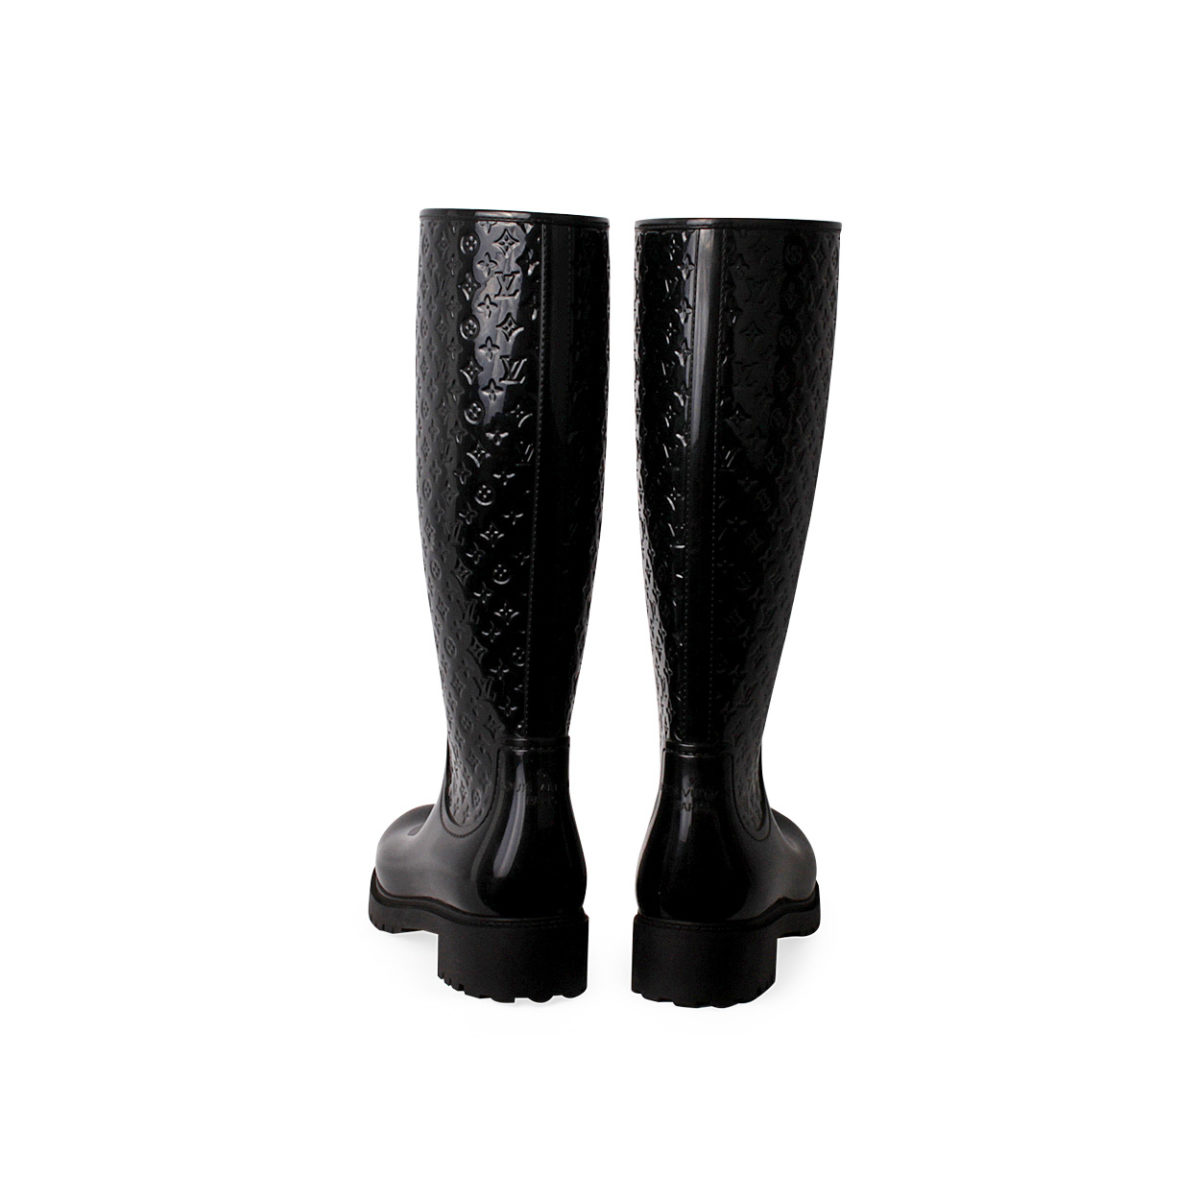 Boots Louis Vuitton Black size 37 EU in Rubber - 34663663